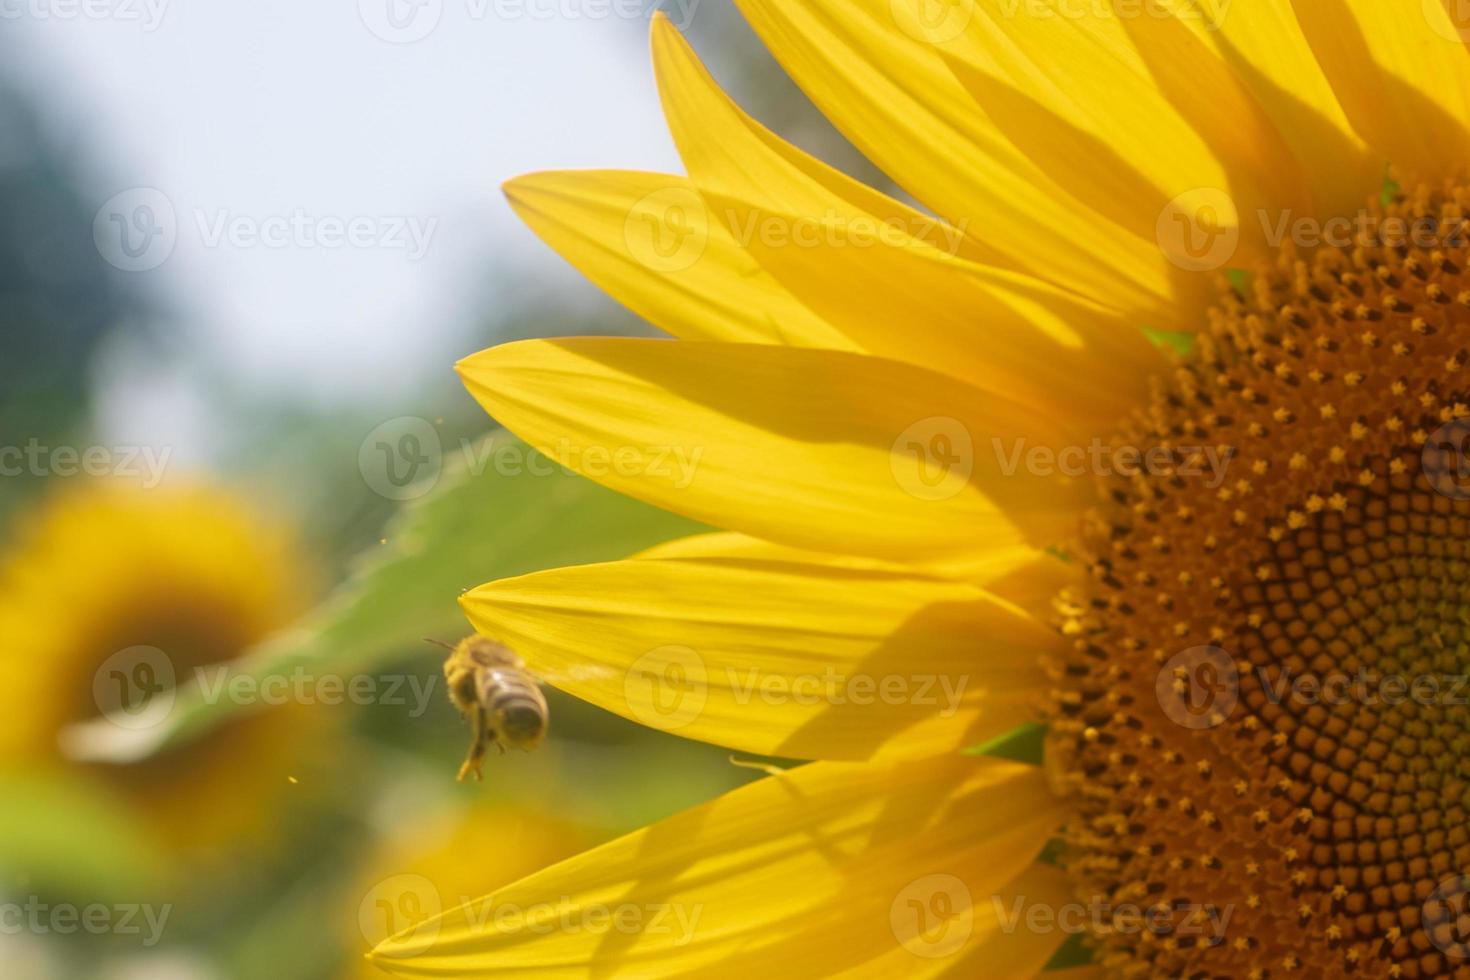 wilde bij op bloem met nectar zonnebloem in veld platteland foto